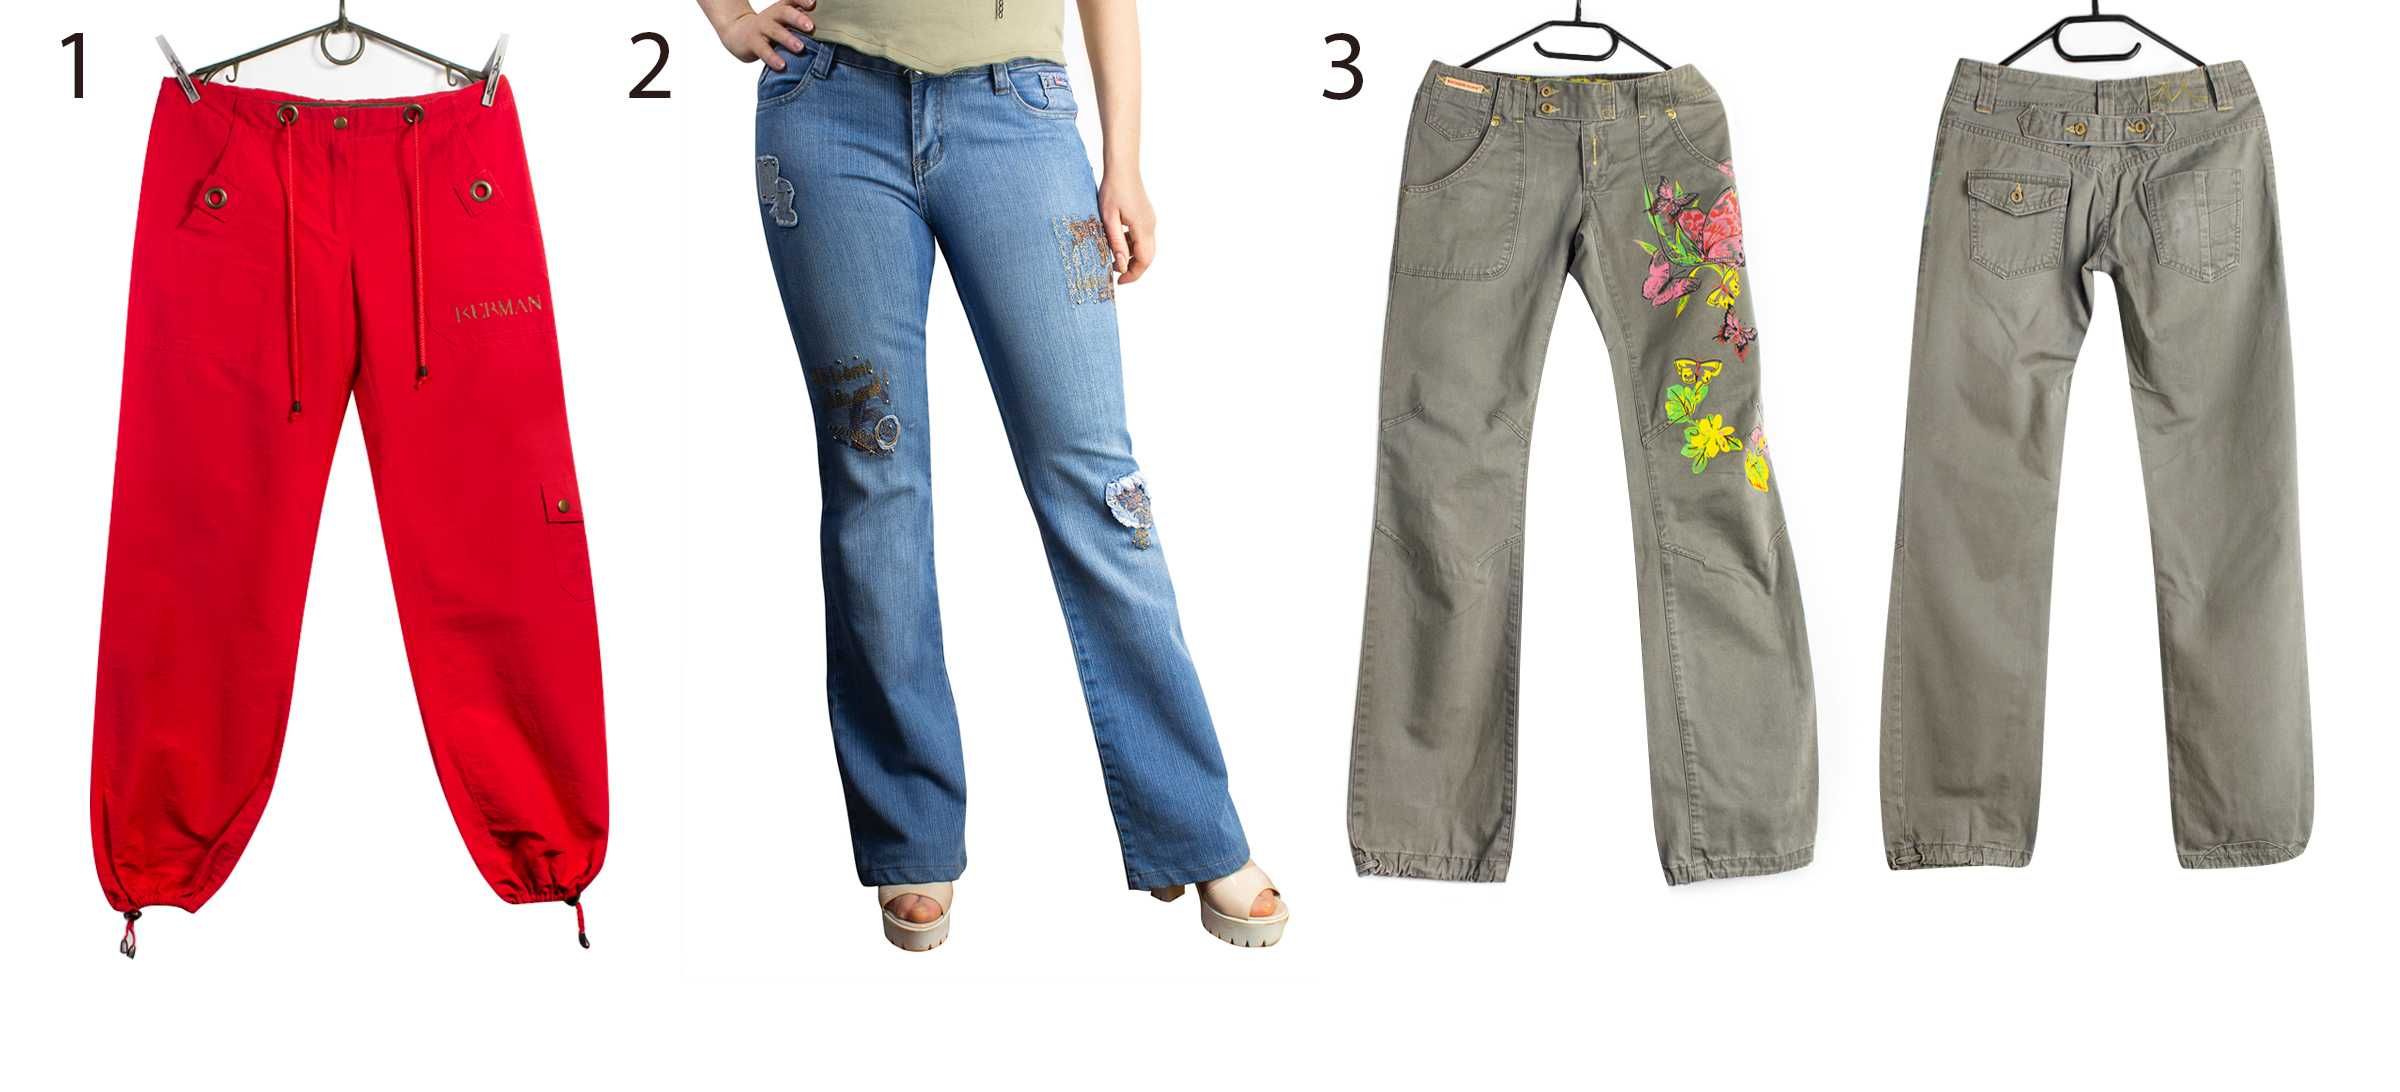 Женские штаны и джинсы